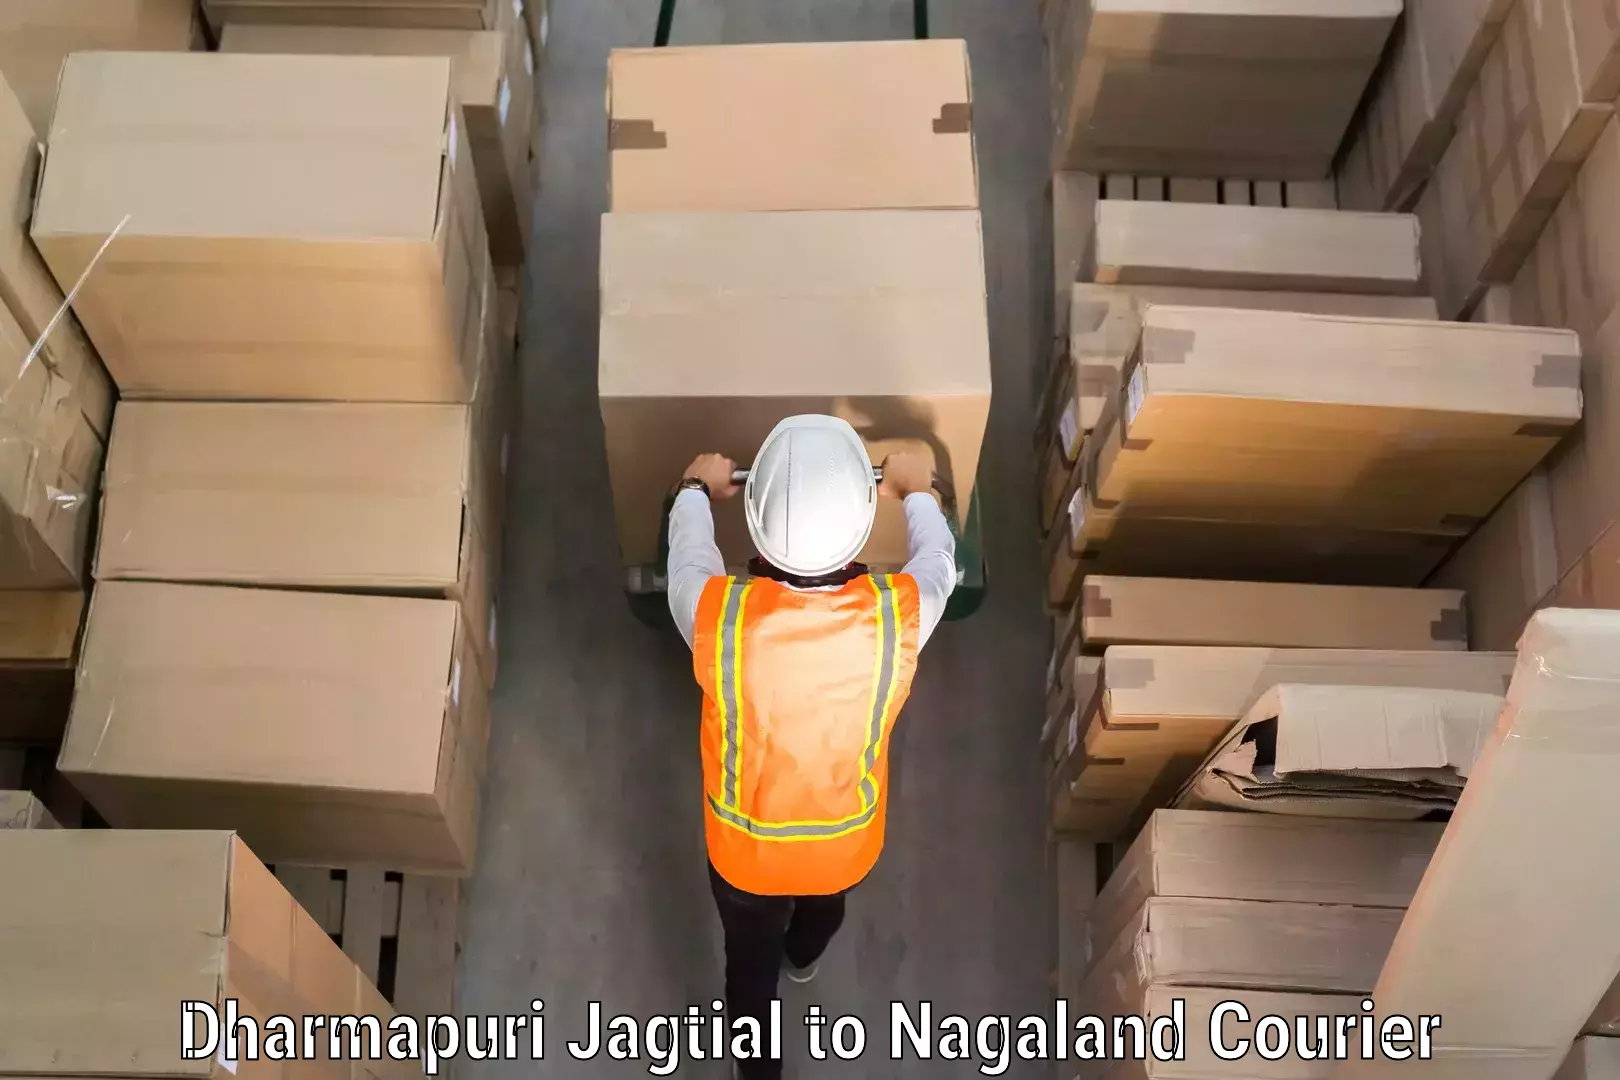 Efficient baggage transport Dharmapuri Jagtial to Dimapur